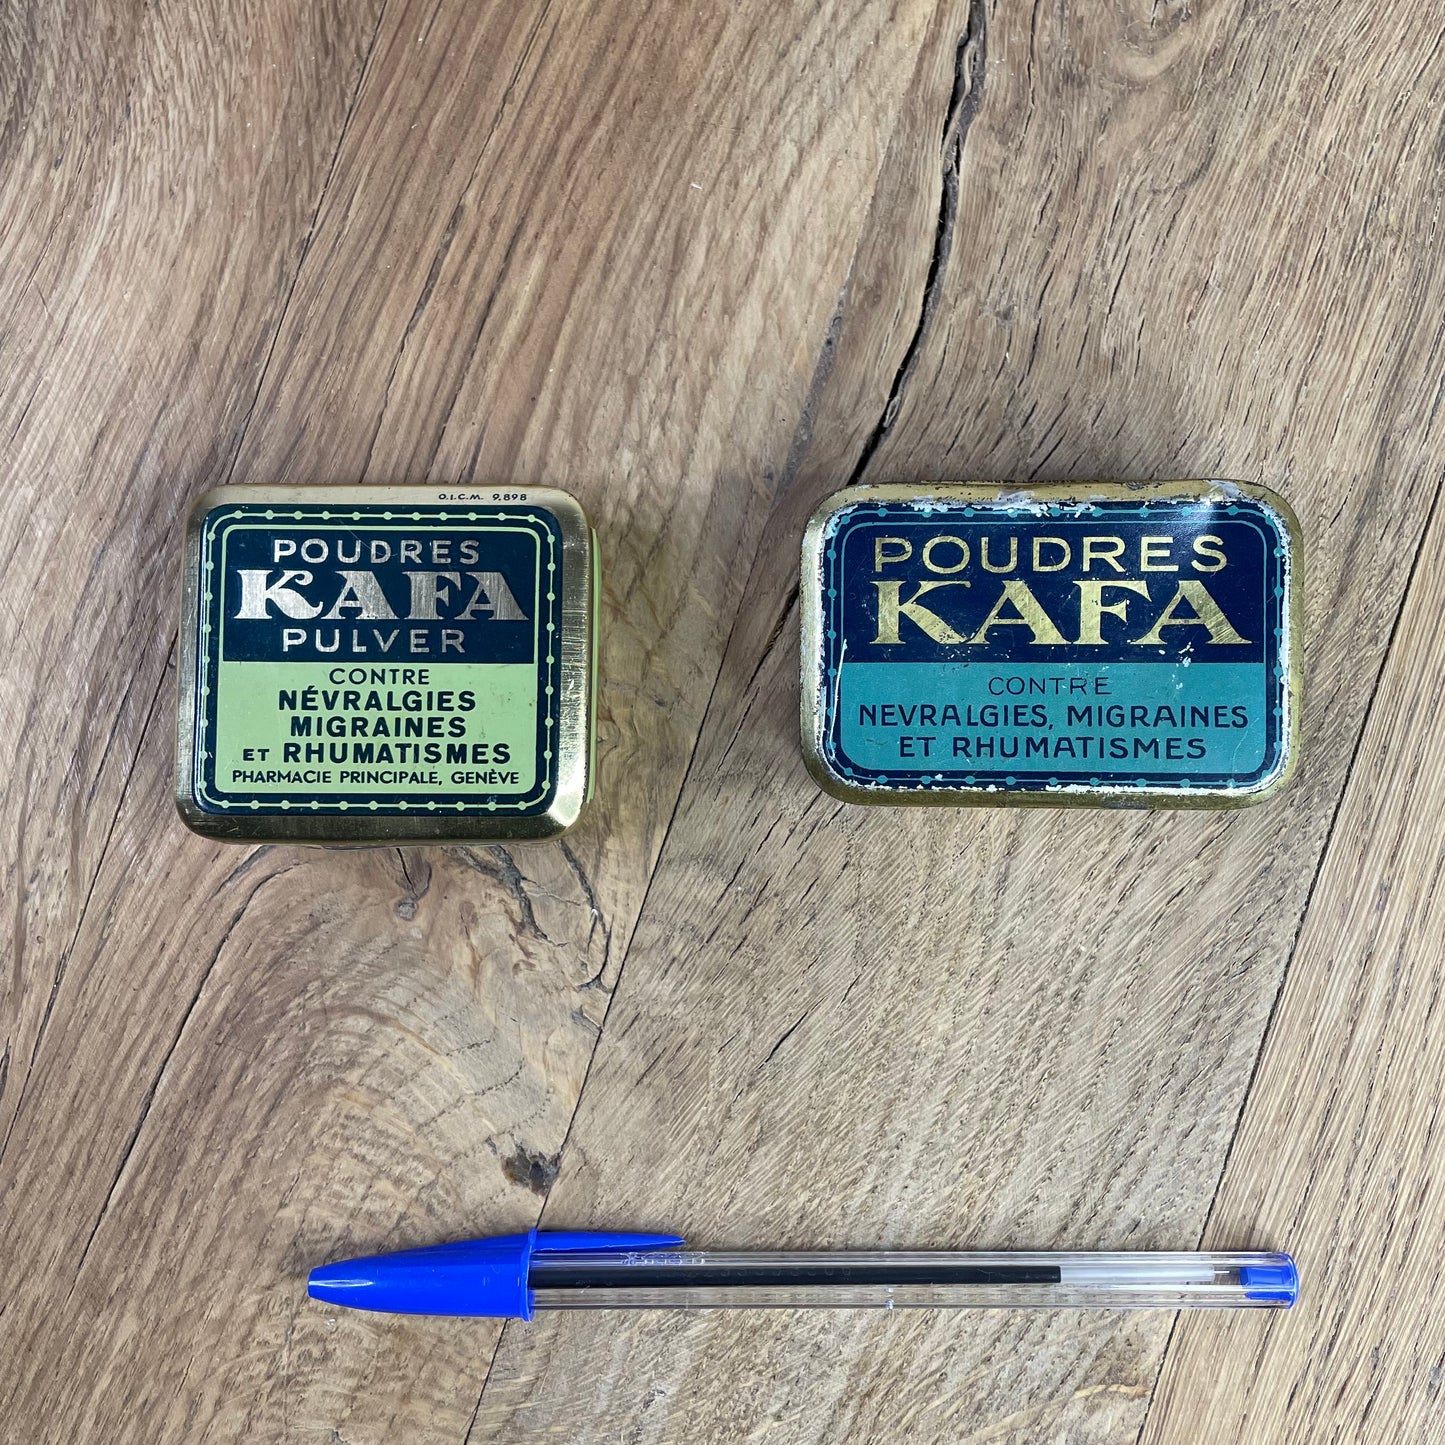 Blue KAFA powder box